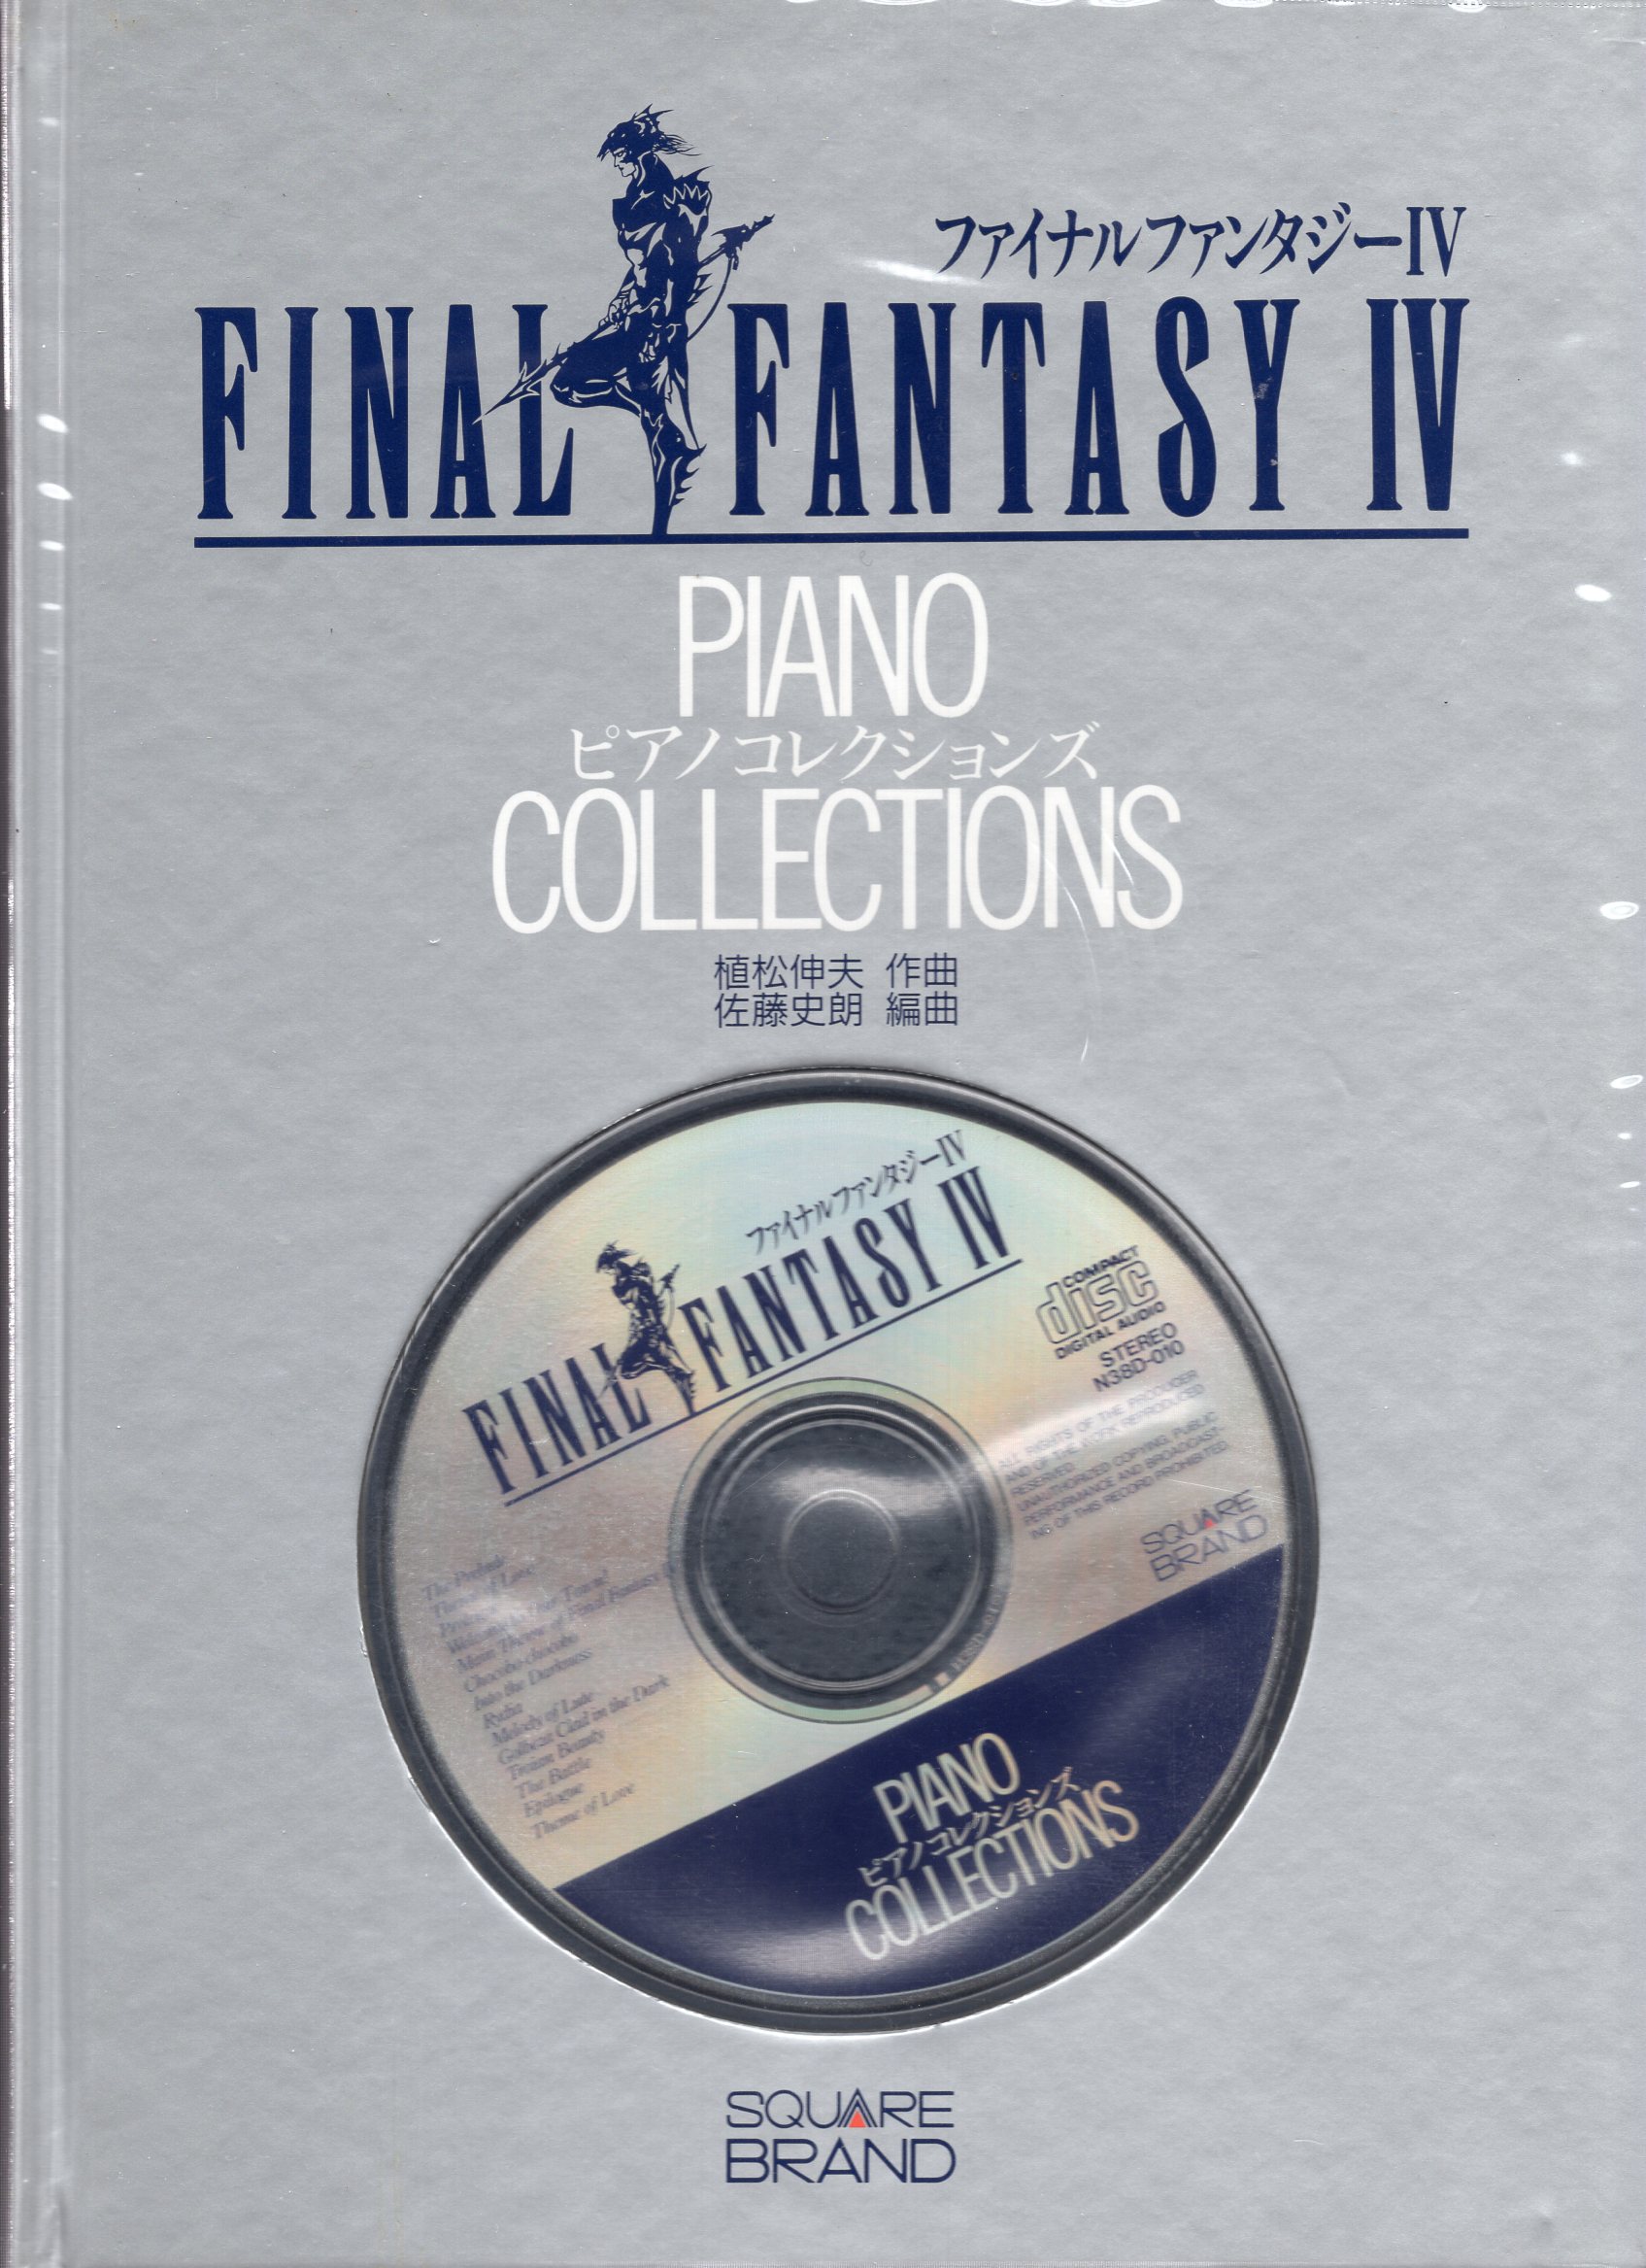 ピアノソロ ピアノコレクションズ ファイナルファンタジー IV FF4 